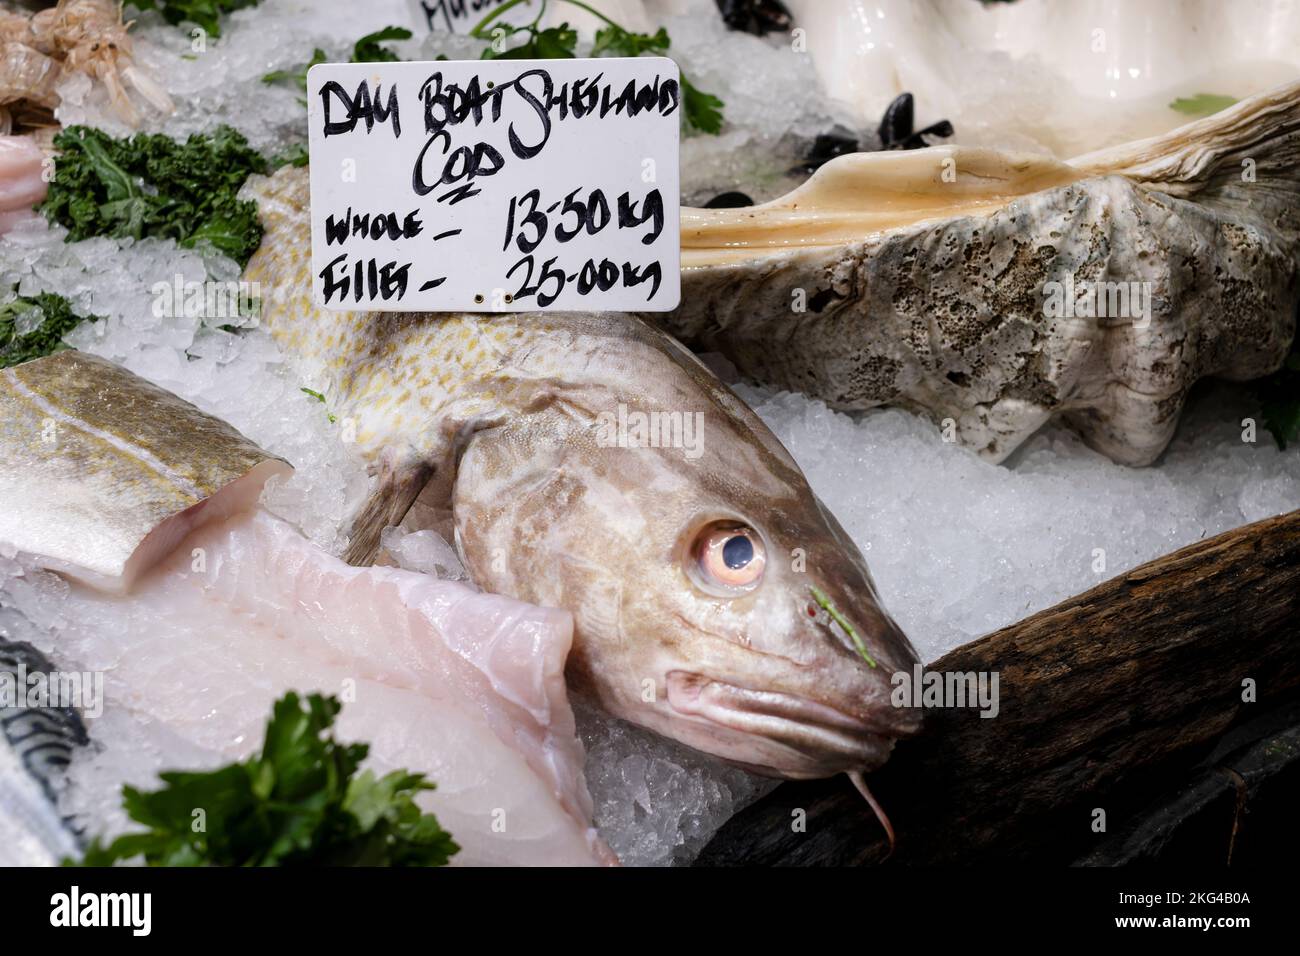 Un barco grande de Shetland fresco pescaba bacalao a la venta en un puesto del mercado. el pescado es entero y se muestra sobre hielo con una etiqueta de precio. Foto de stock